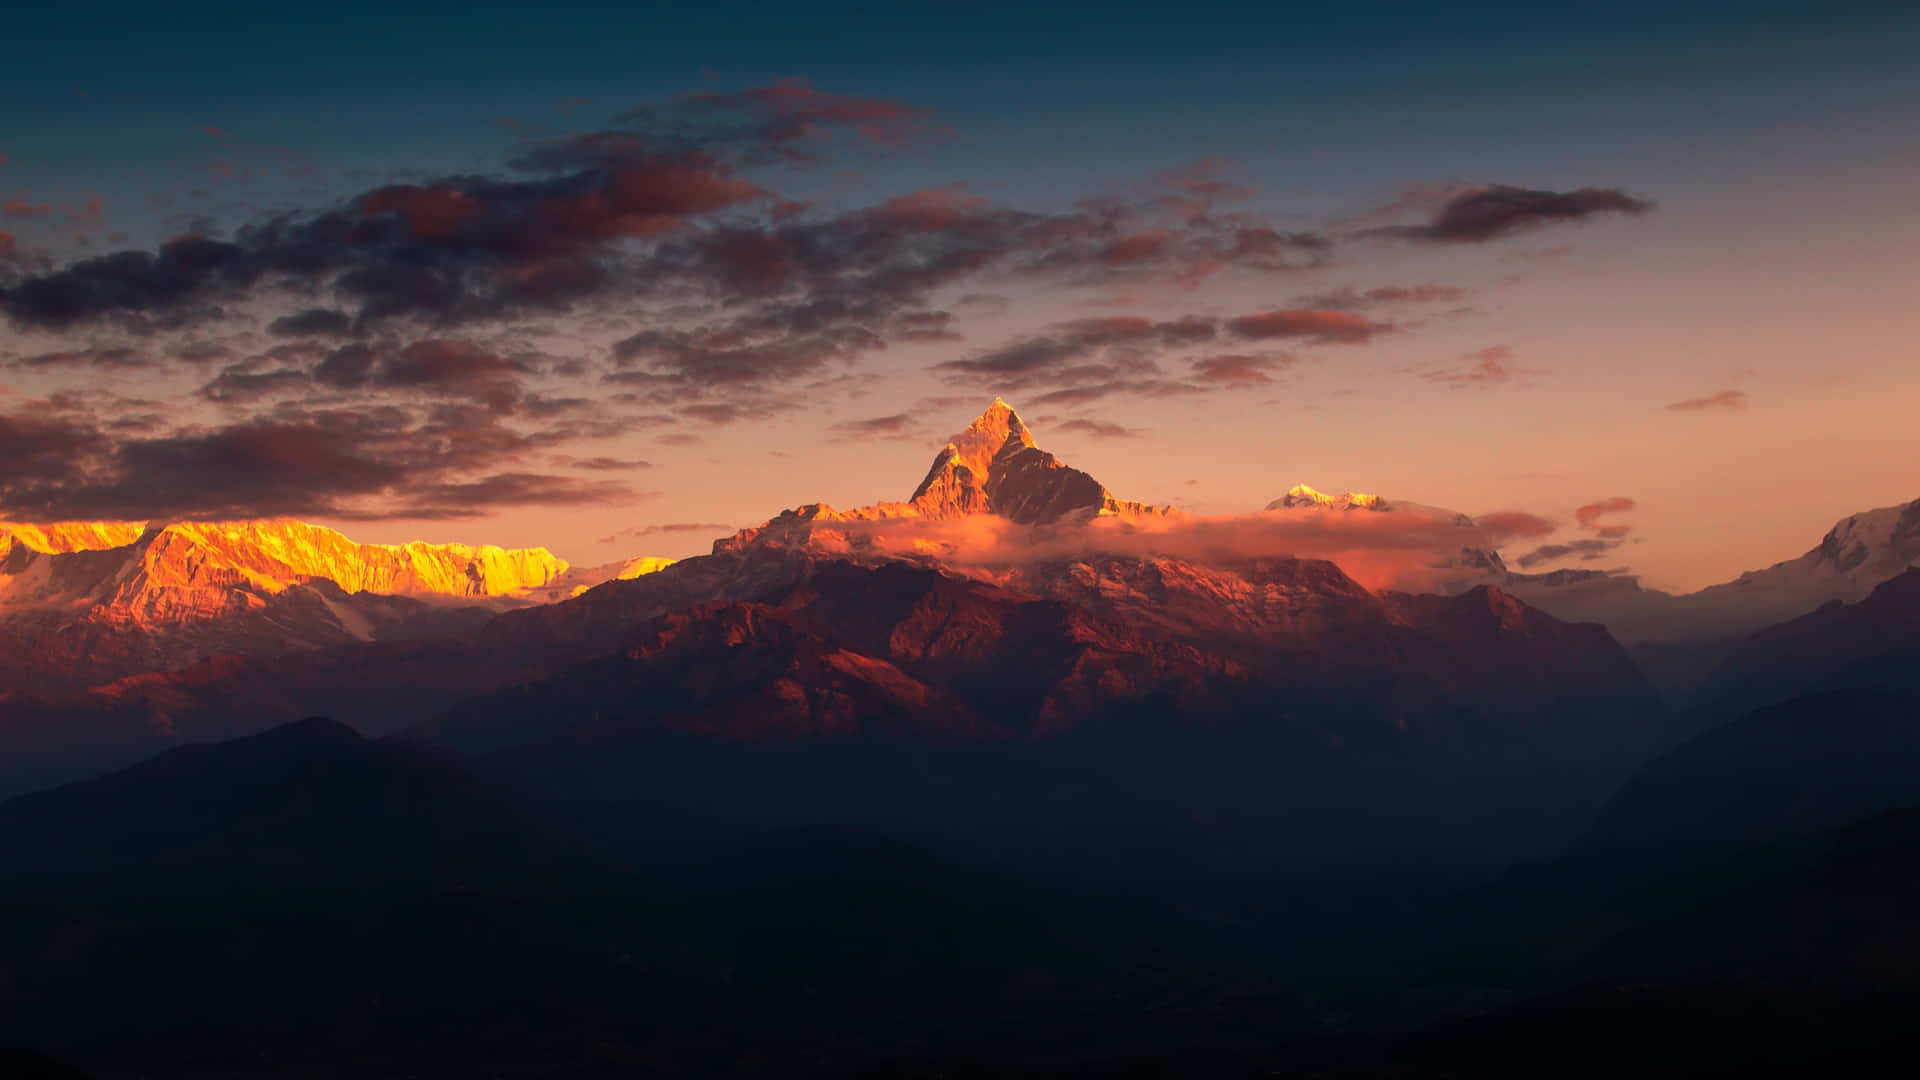 Unavista Impresionante Del Monte Himalaya, La Cordillera Más Alta Del Mundo.